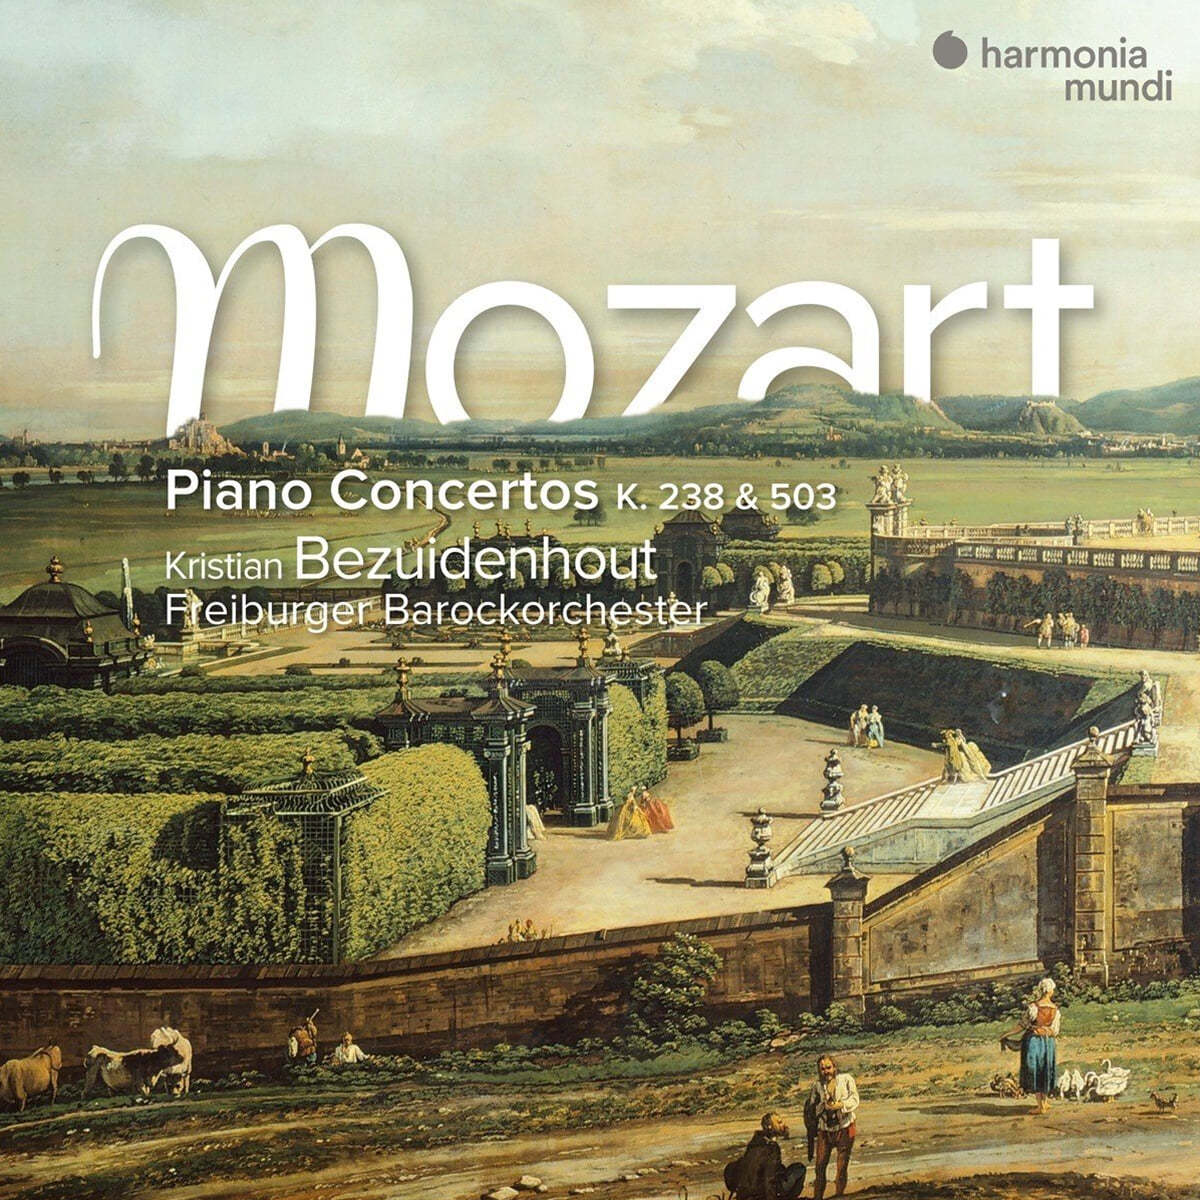 Kristian Bezuidenhout 모차르트: 피아노 협주곡 6번 & 25번 (Mozart: Piano Concerto K.238 & K.503)